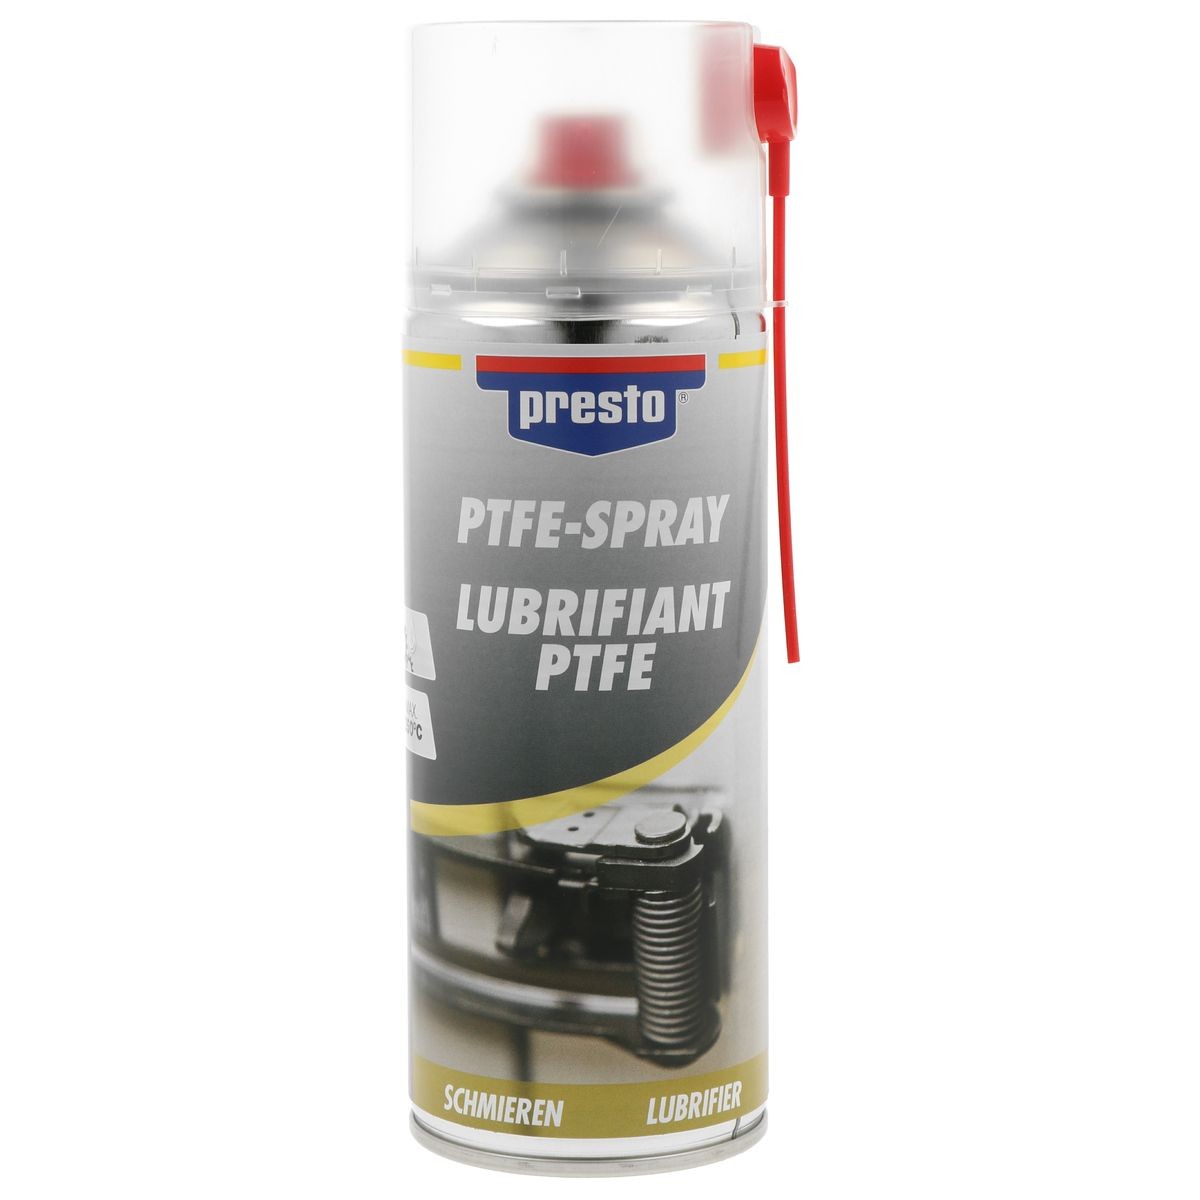 PTFE spray PRESTO 306338 Reviews